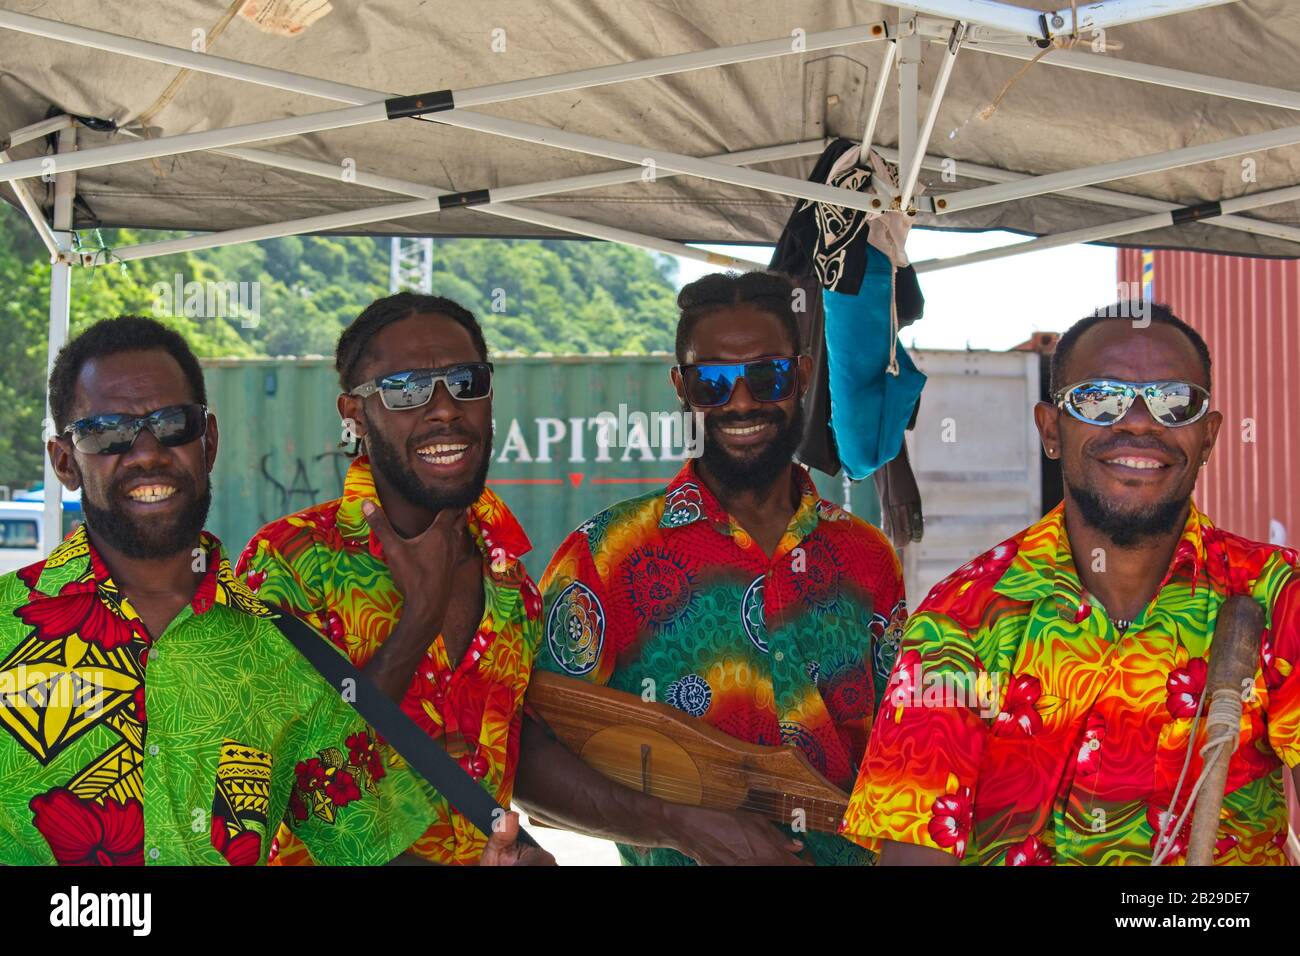 Port Vila, Vanuatu - 14 février 2020: Kanak hommes dans des chemises colorées chantant et posant pour les touristes. Banque D'Images